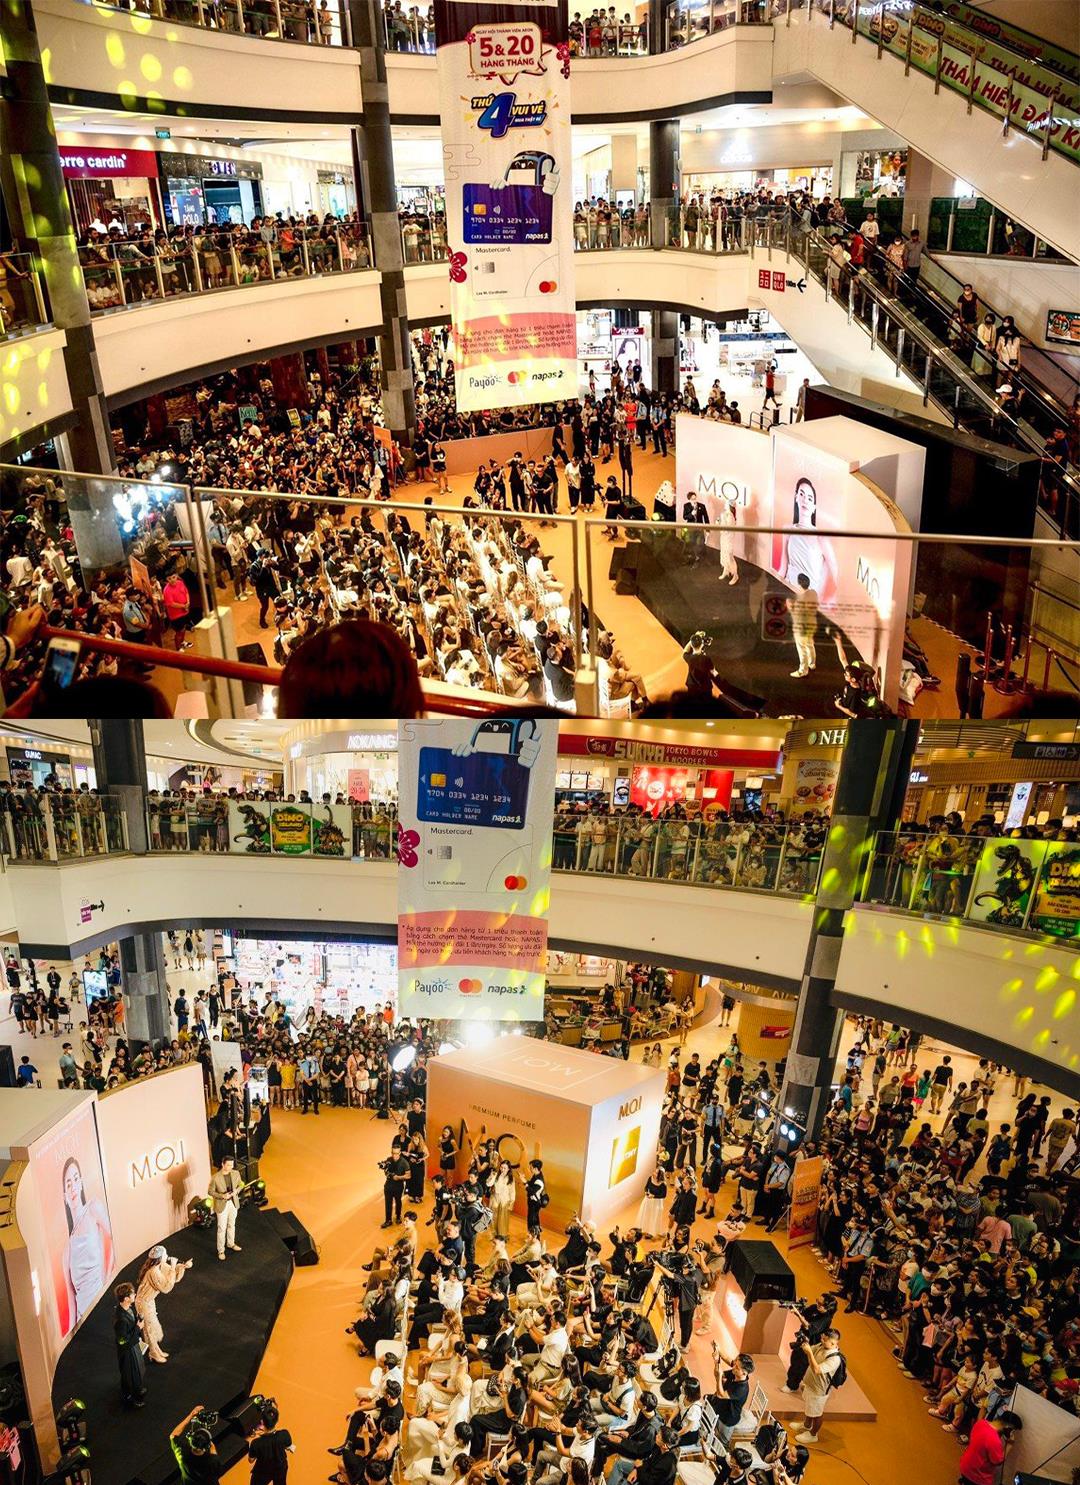 Local brand của Hà Hồ bất ngờ lấn sân sang lãnh địa nước hoa: Hàng nghìn người xếp hàng chờ mua cho bằng được - Ảnh 2.